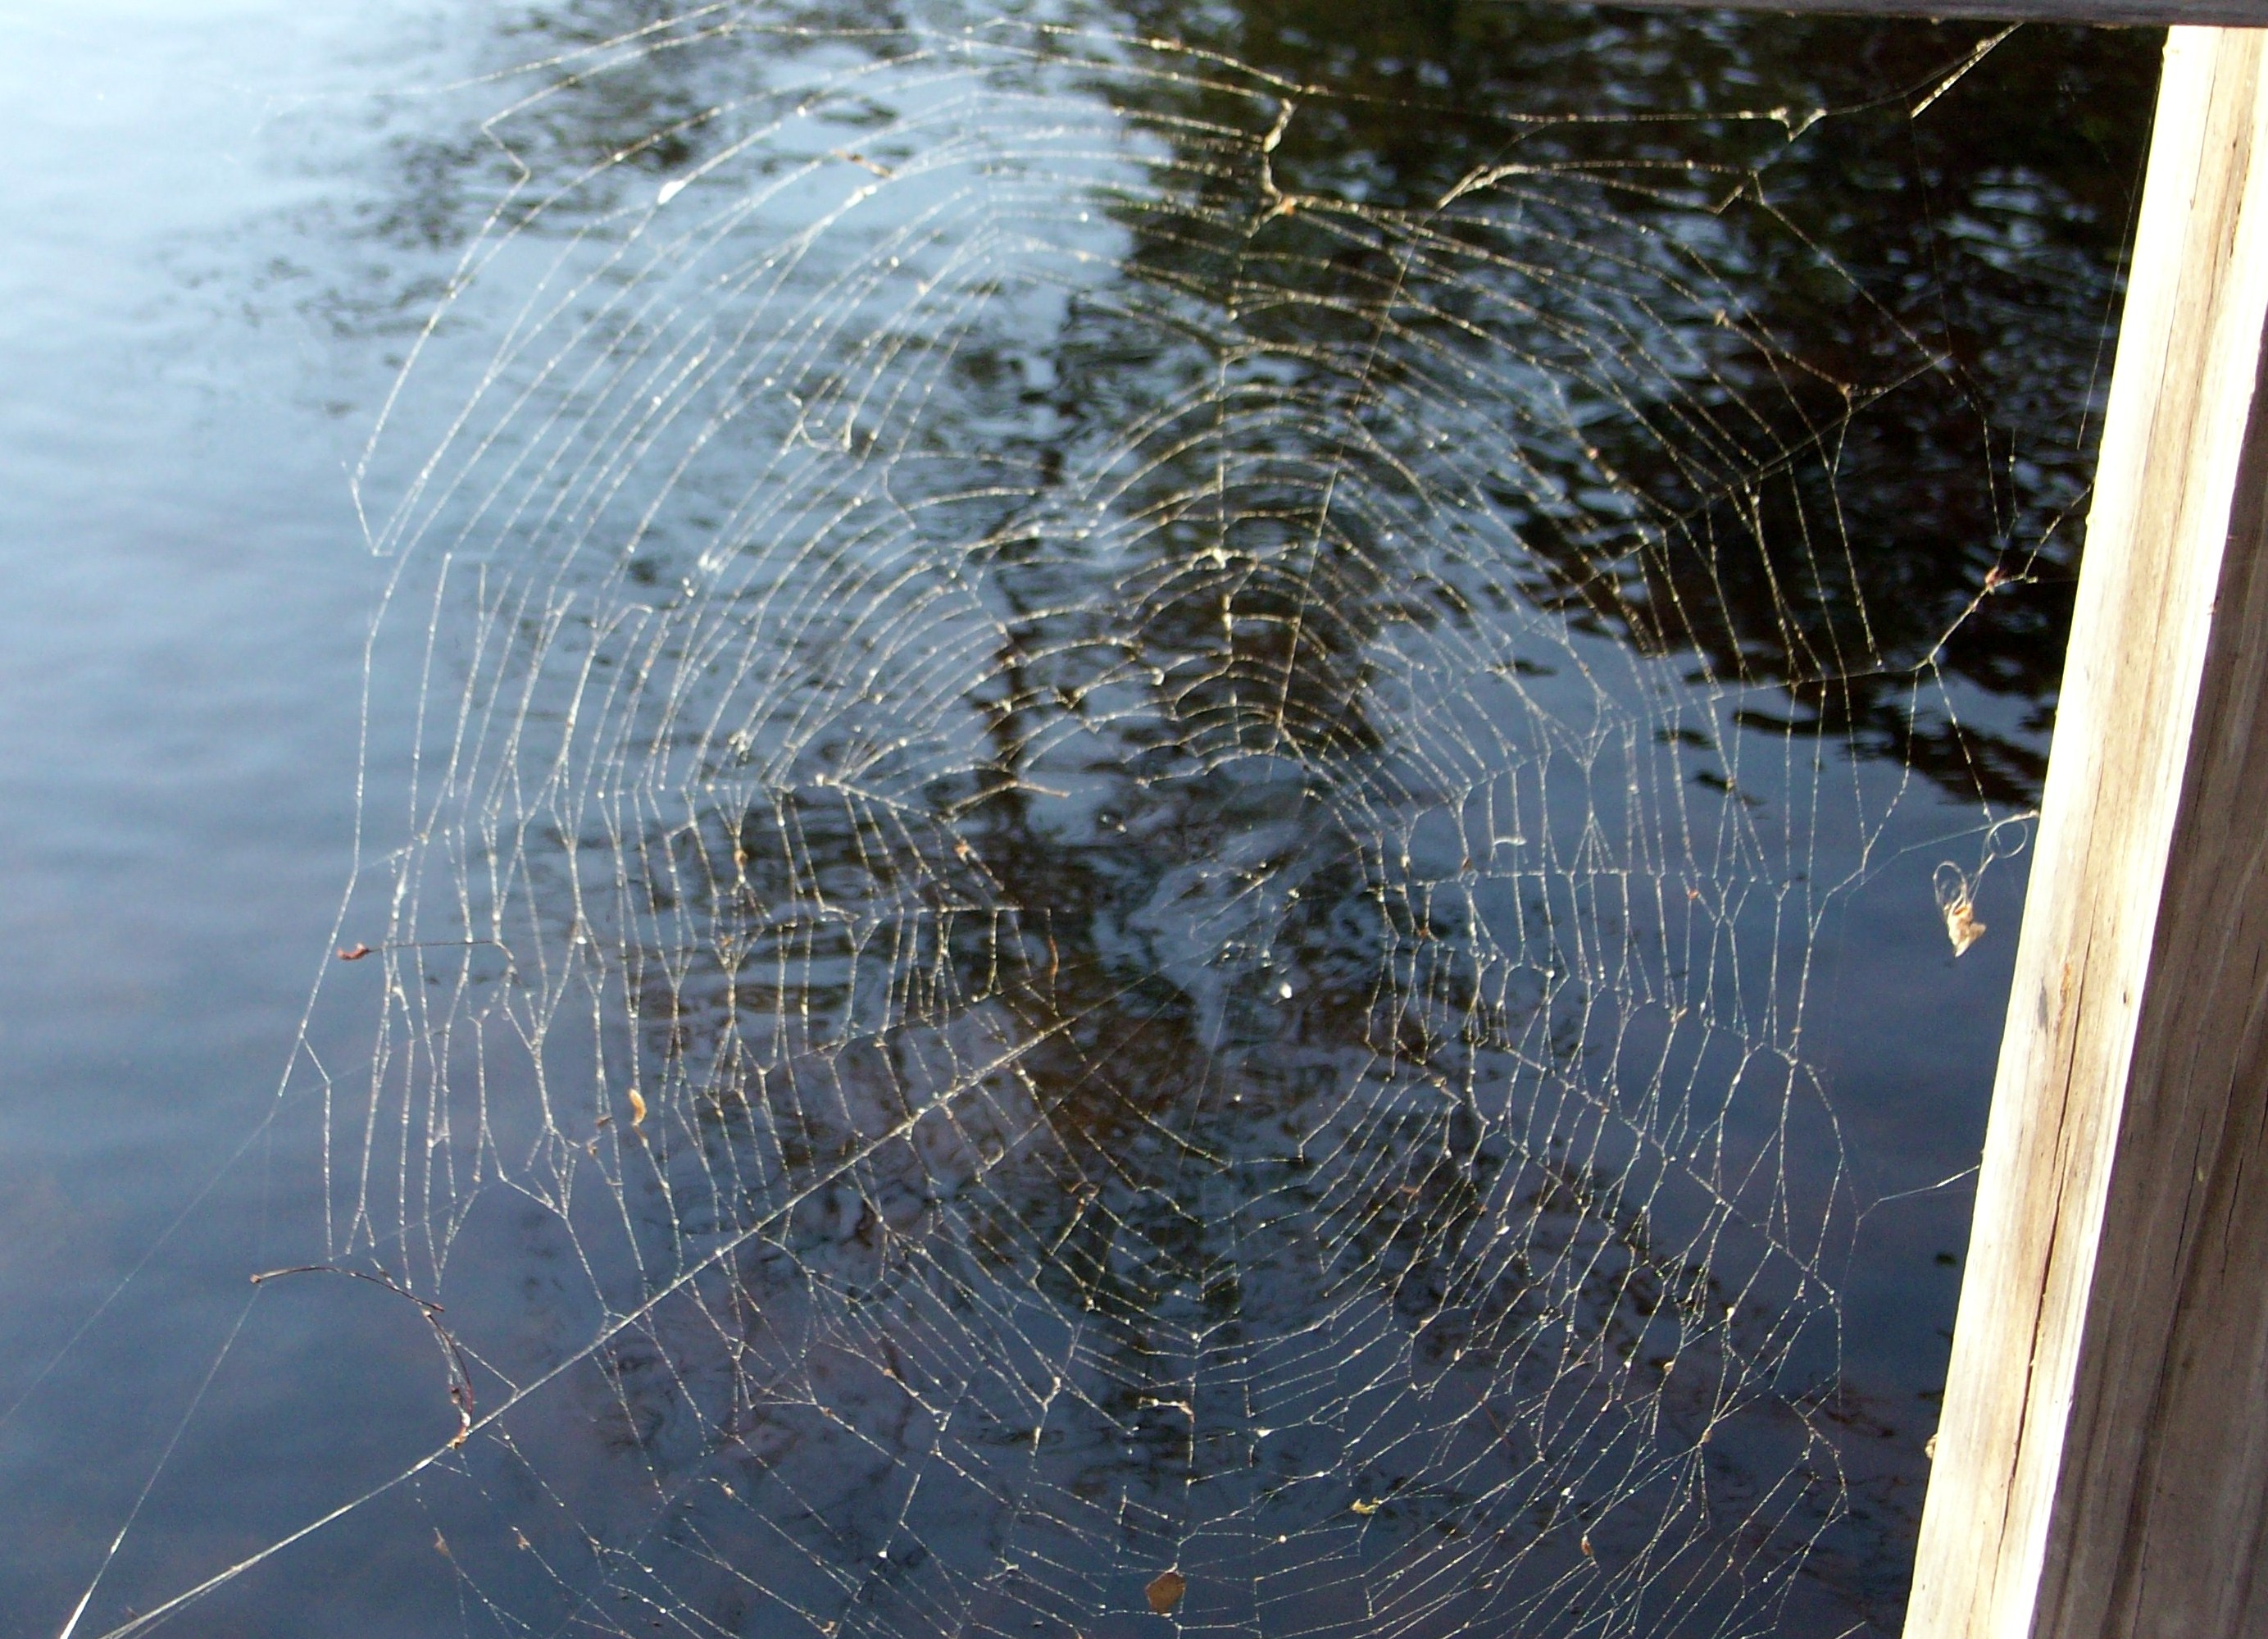 Spider Web, Spider, Spiders, Spiderweb, Web, HQ Photo